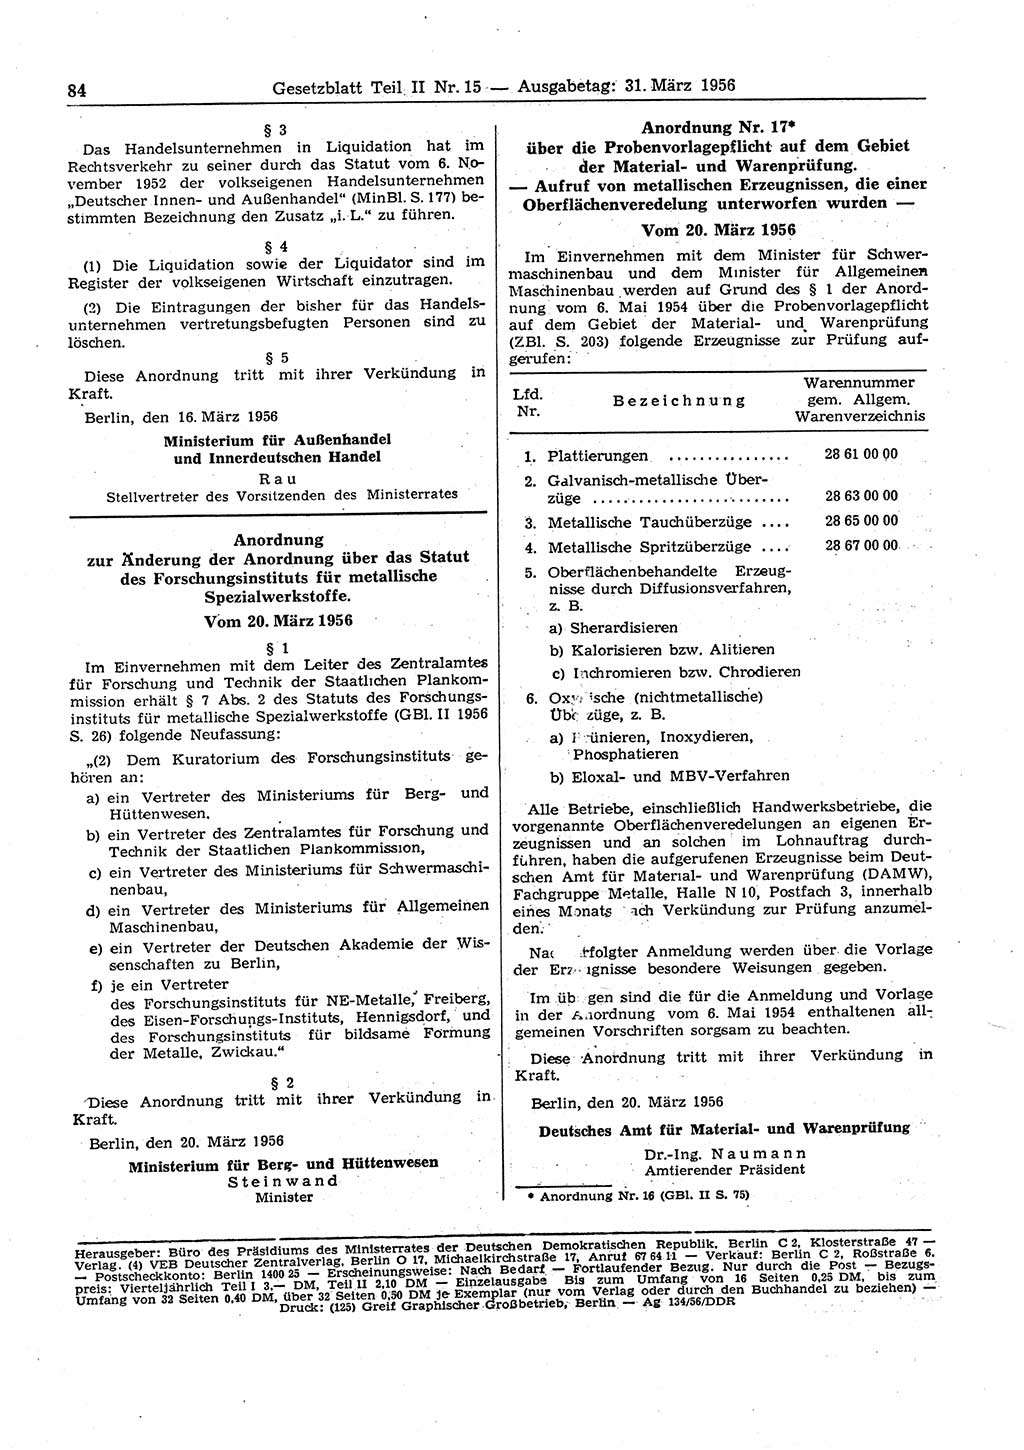 Gesetzblatt (GBl.) der Deutschen Demokratischen Republik (DDR) Teil ⅠⅠ 1956, Seite 84 (GBl. DDR ⅠⅠ 1956, S. 84)